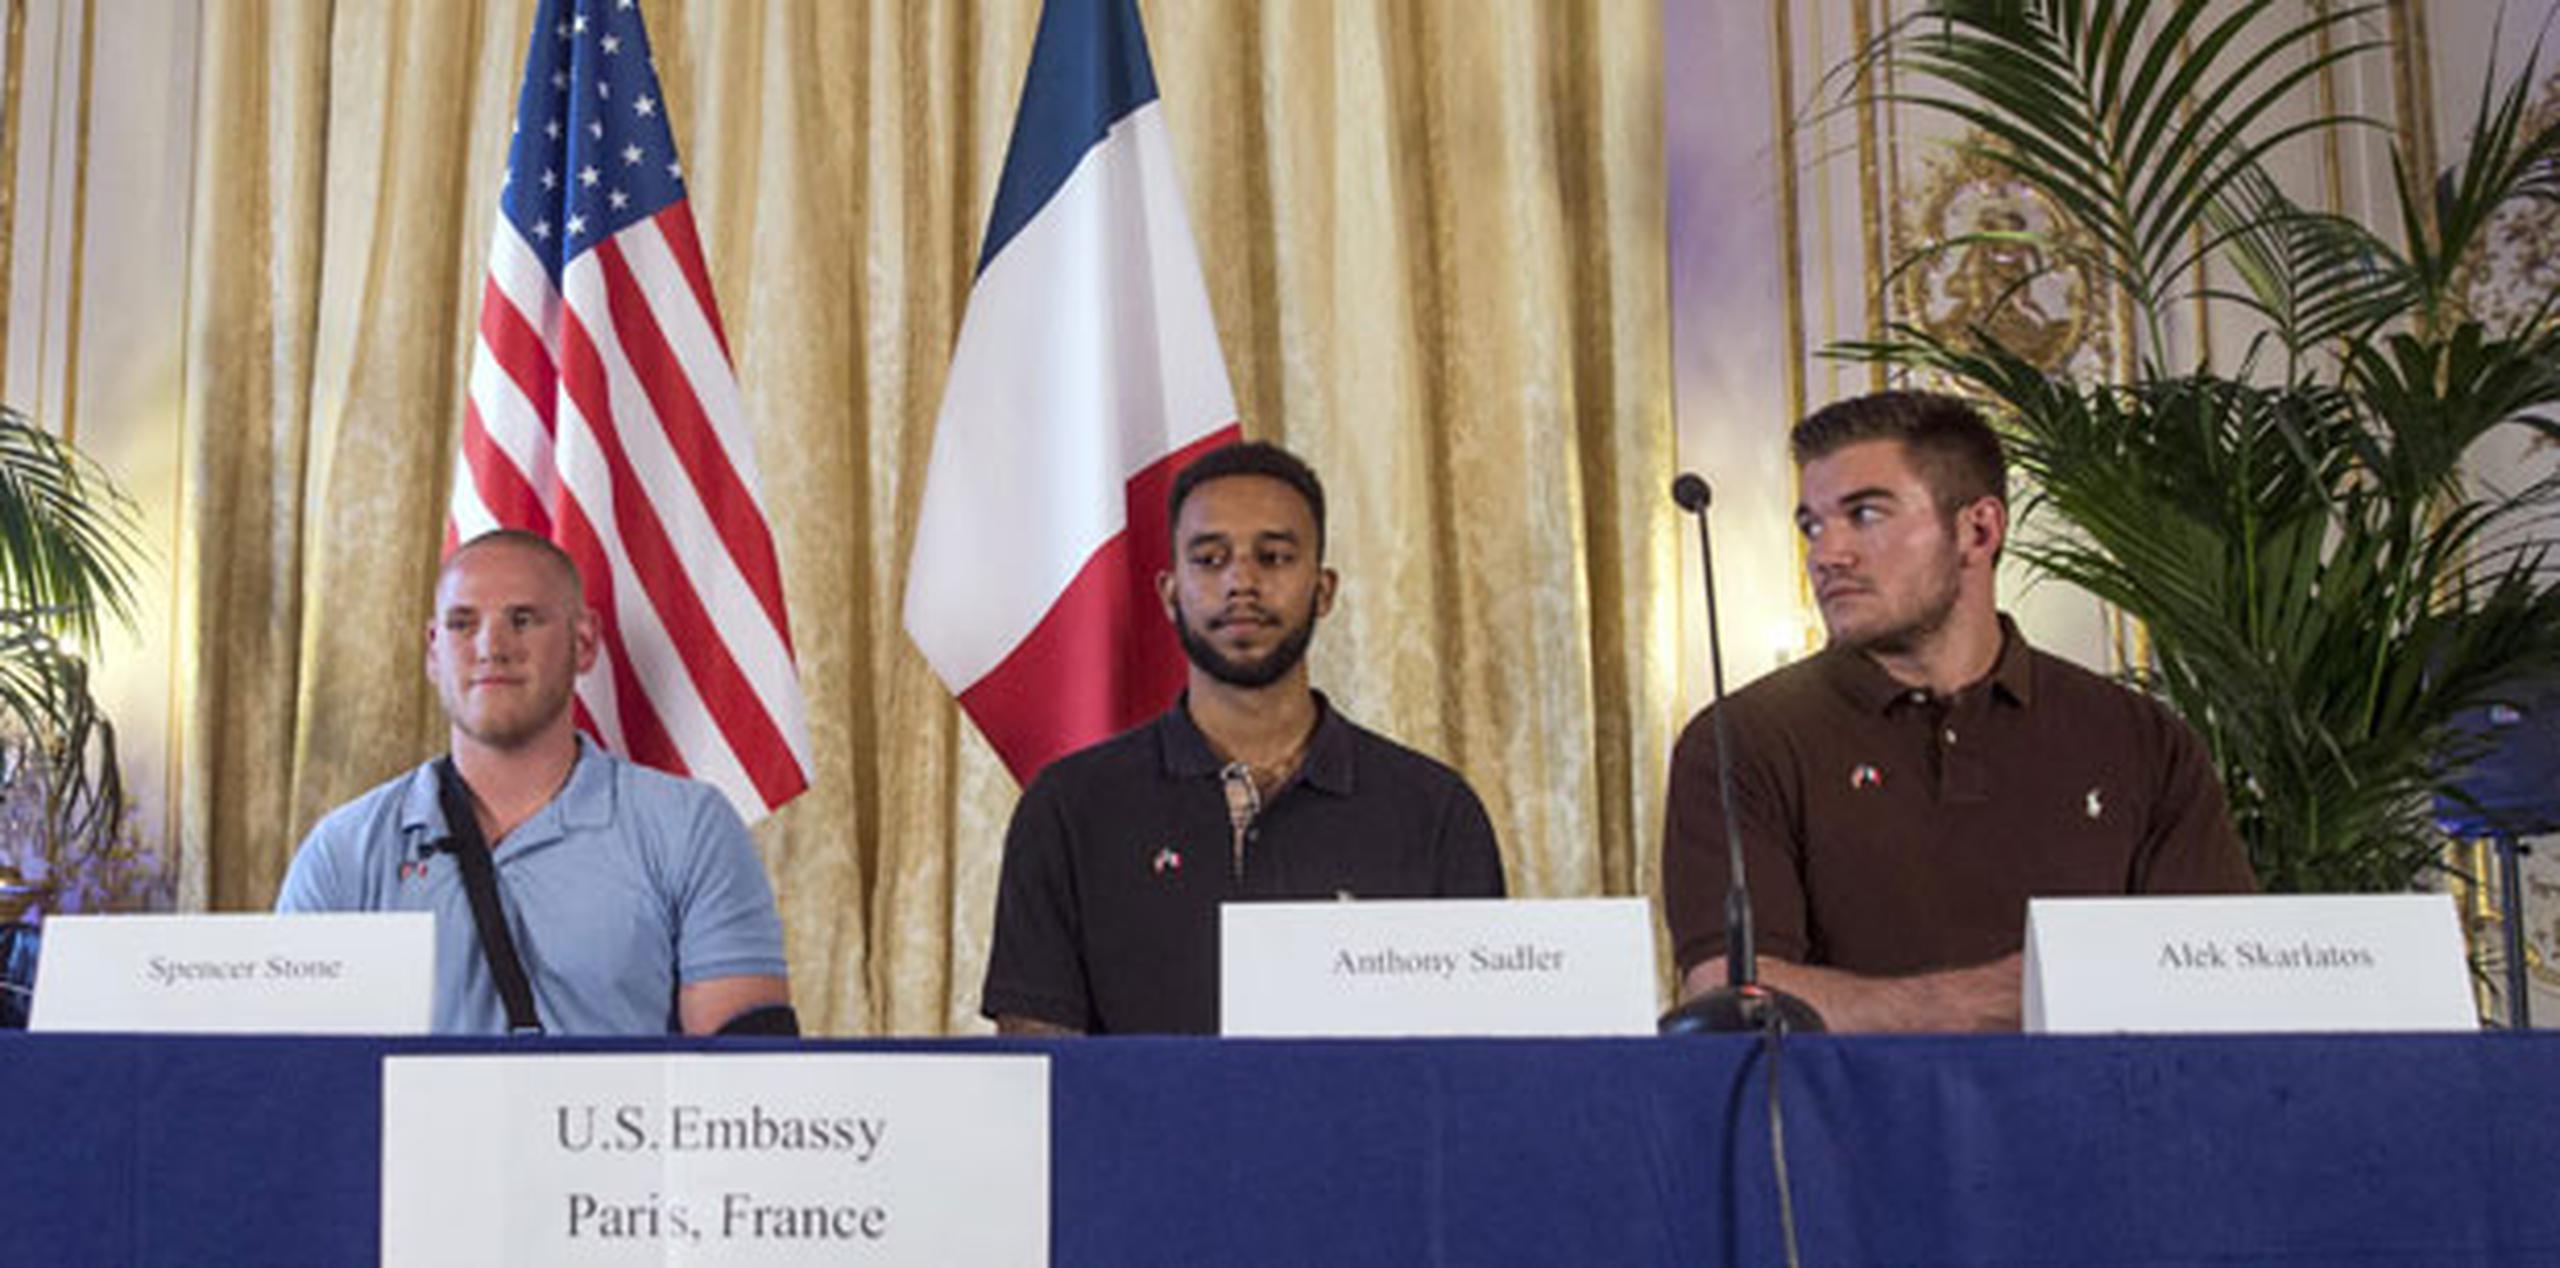 El presidente de Francia rindió hoy homenaje a los tres ciudadanos estadounidenses y uno británico que consiguieron evitar "una masacre, una carnicería". (EFE/EPA/Etienne Laurent)
